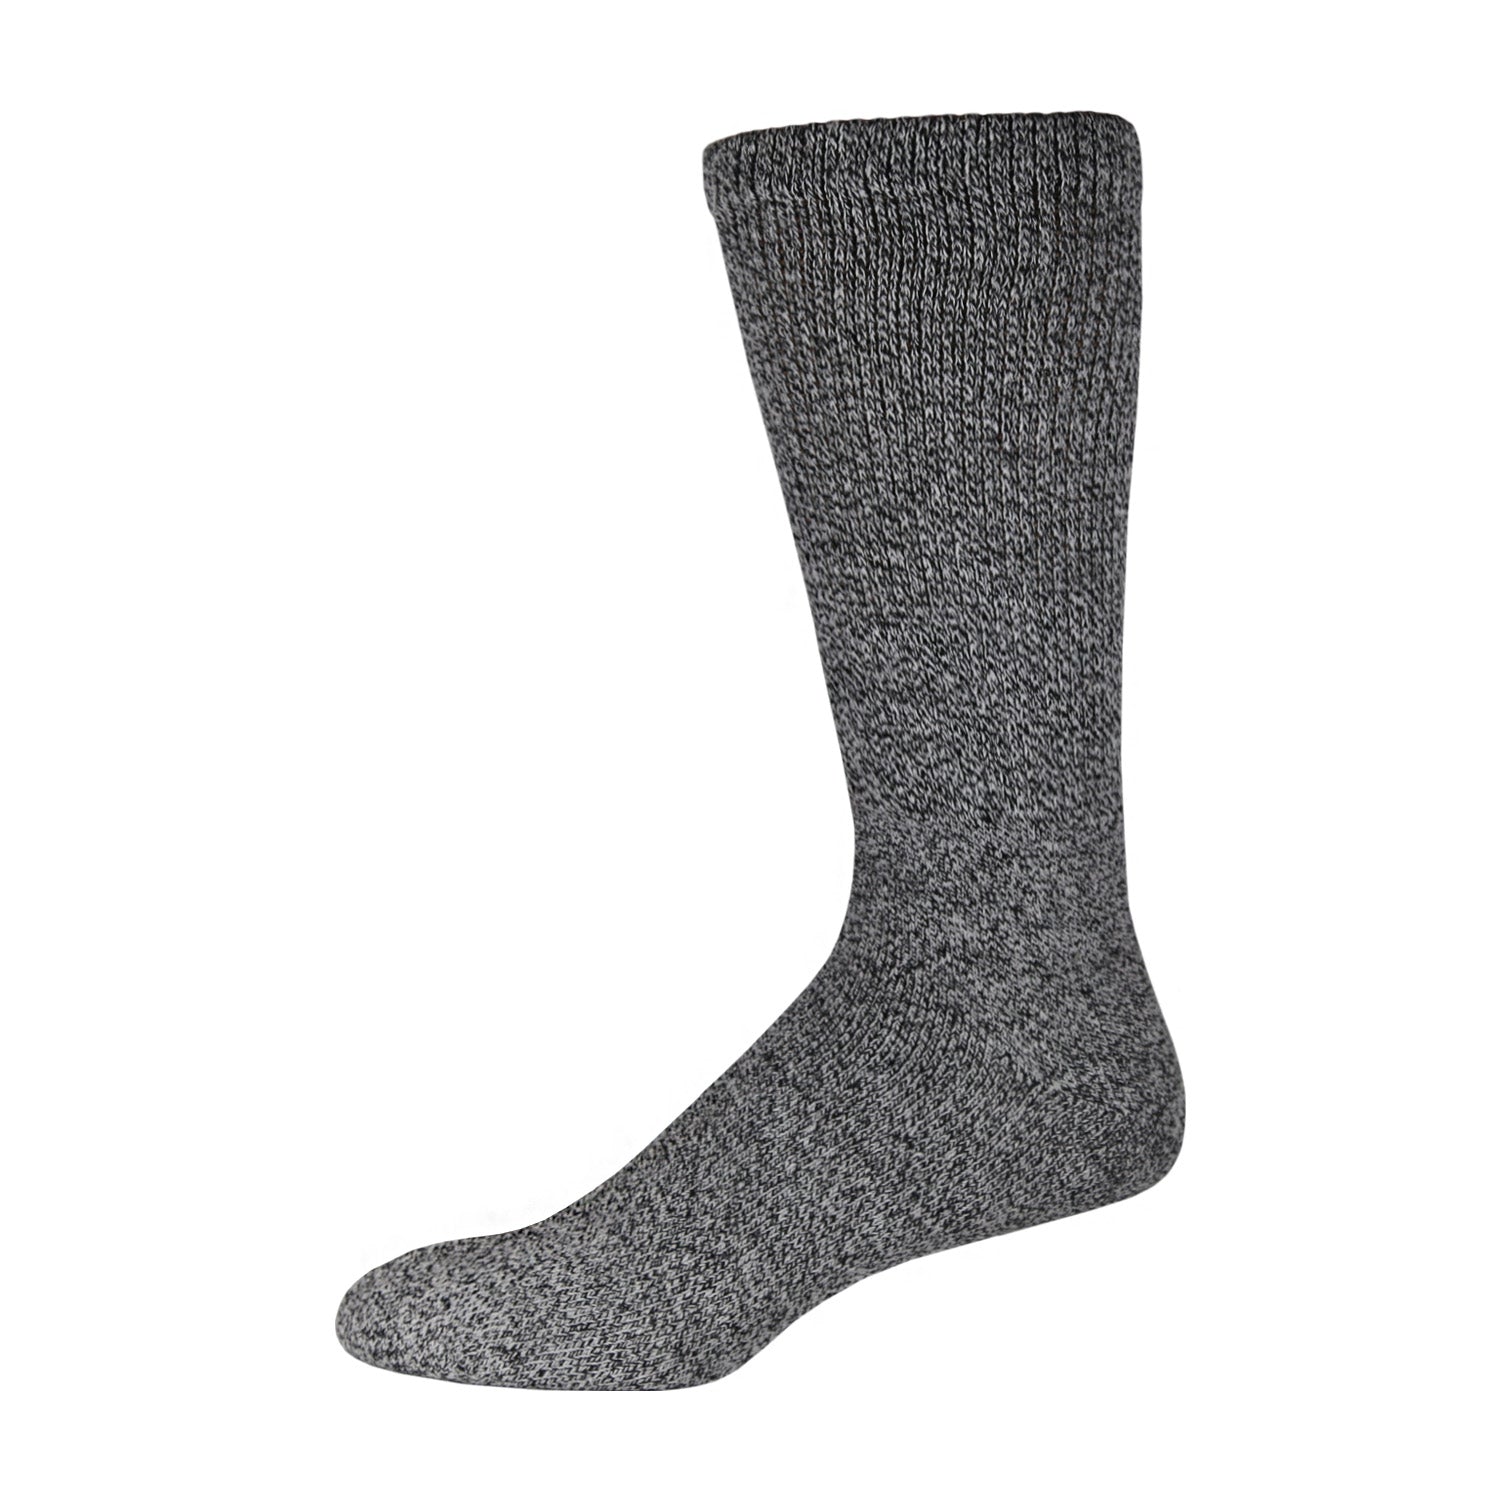 6 Pairs of Merino Wool Diabetic Thermal Socks